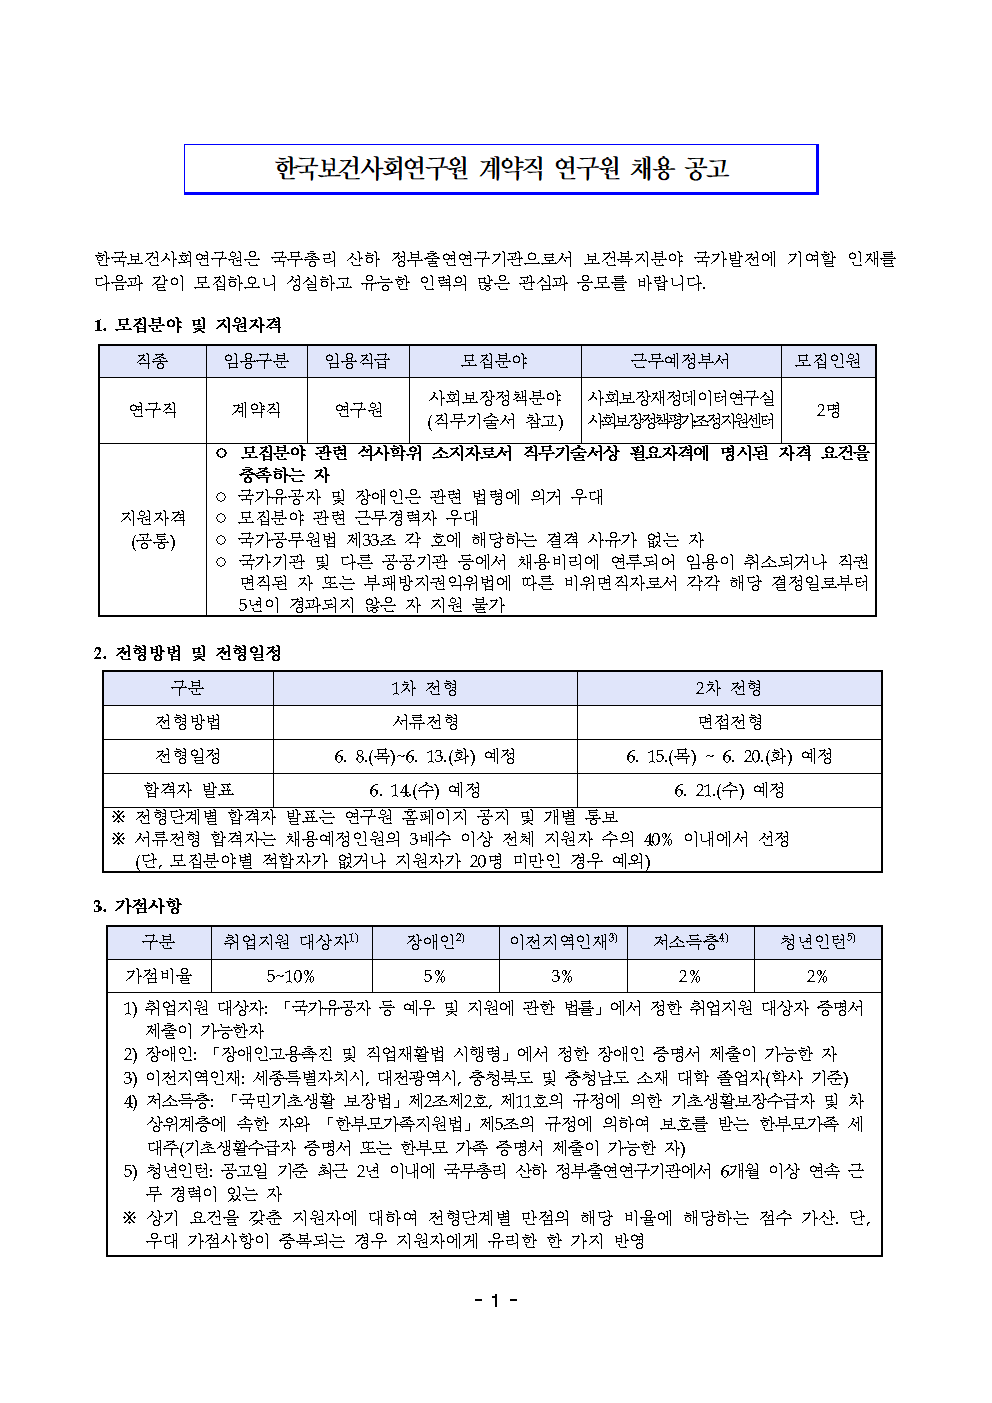 (1/2) 한국보건사회연구원 계약직 연구원 채용 공고 - 자세한 내용은 하단 참조